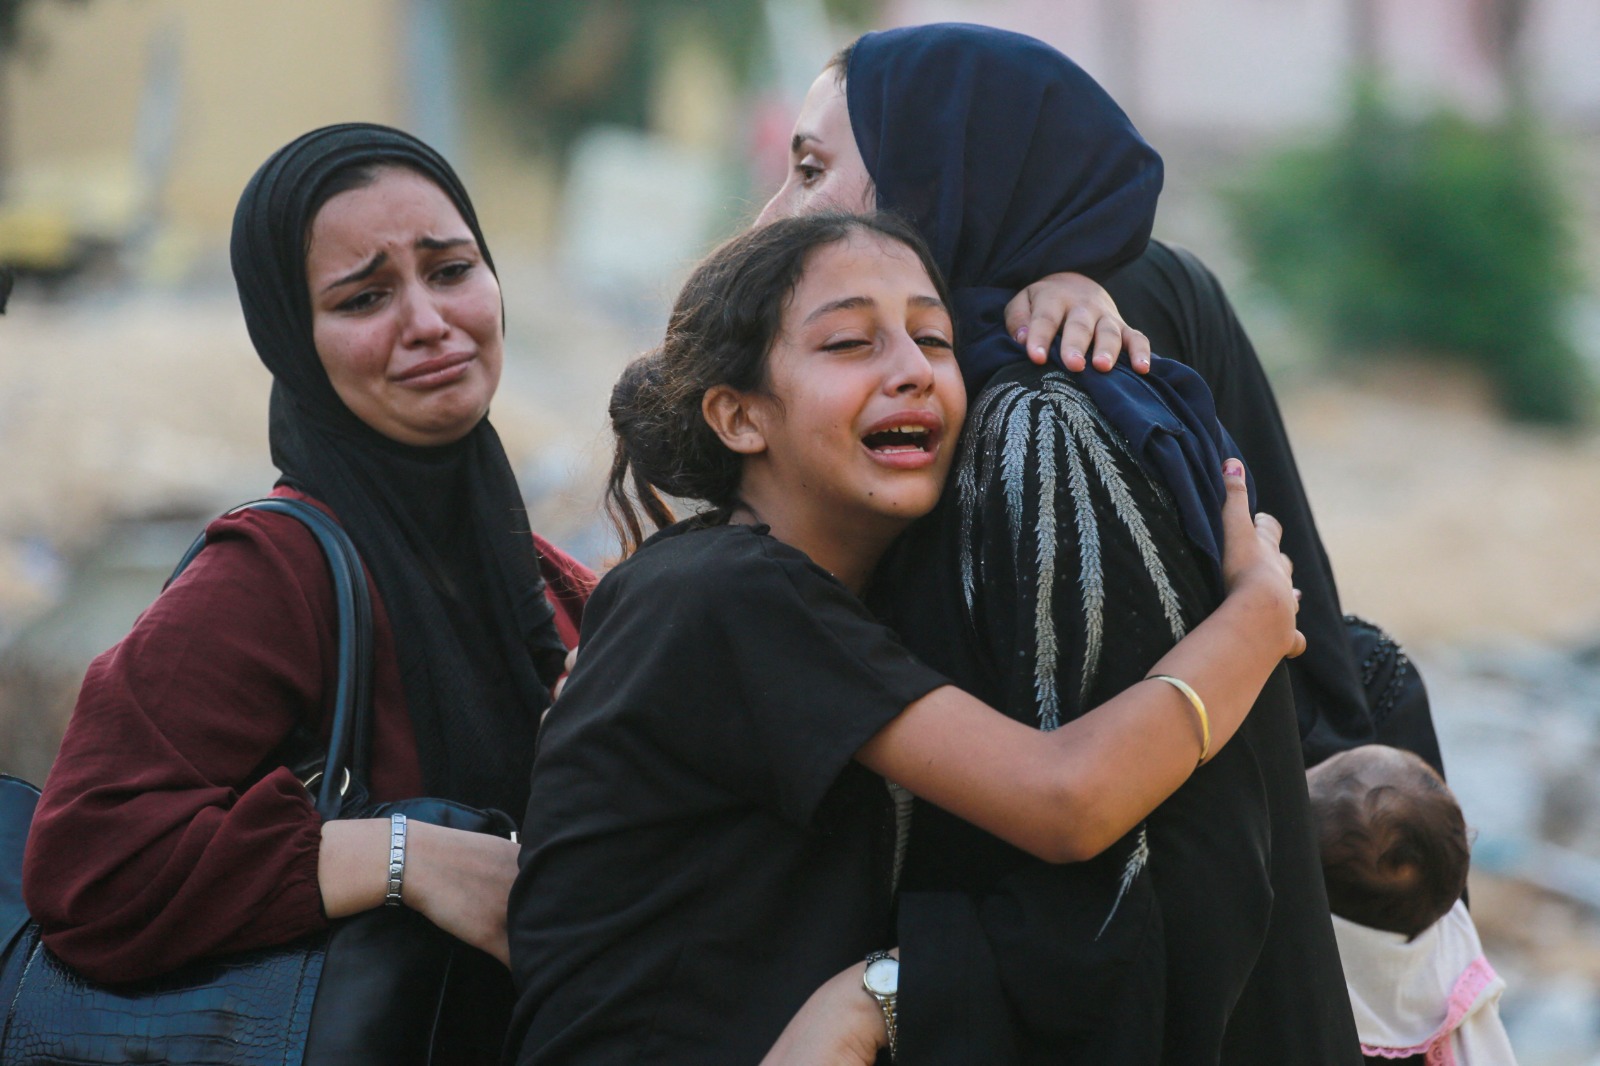 غارات إسرائيلية توقع 70 قتيلاً وأكثر من 200 جريح في خان يونس